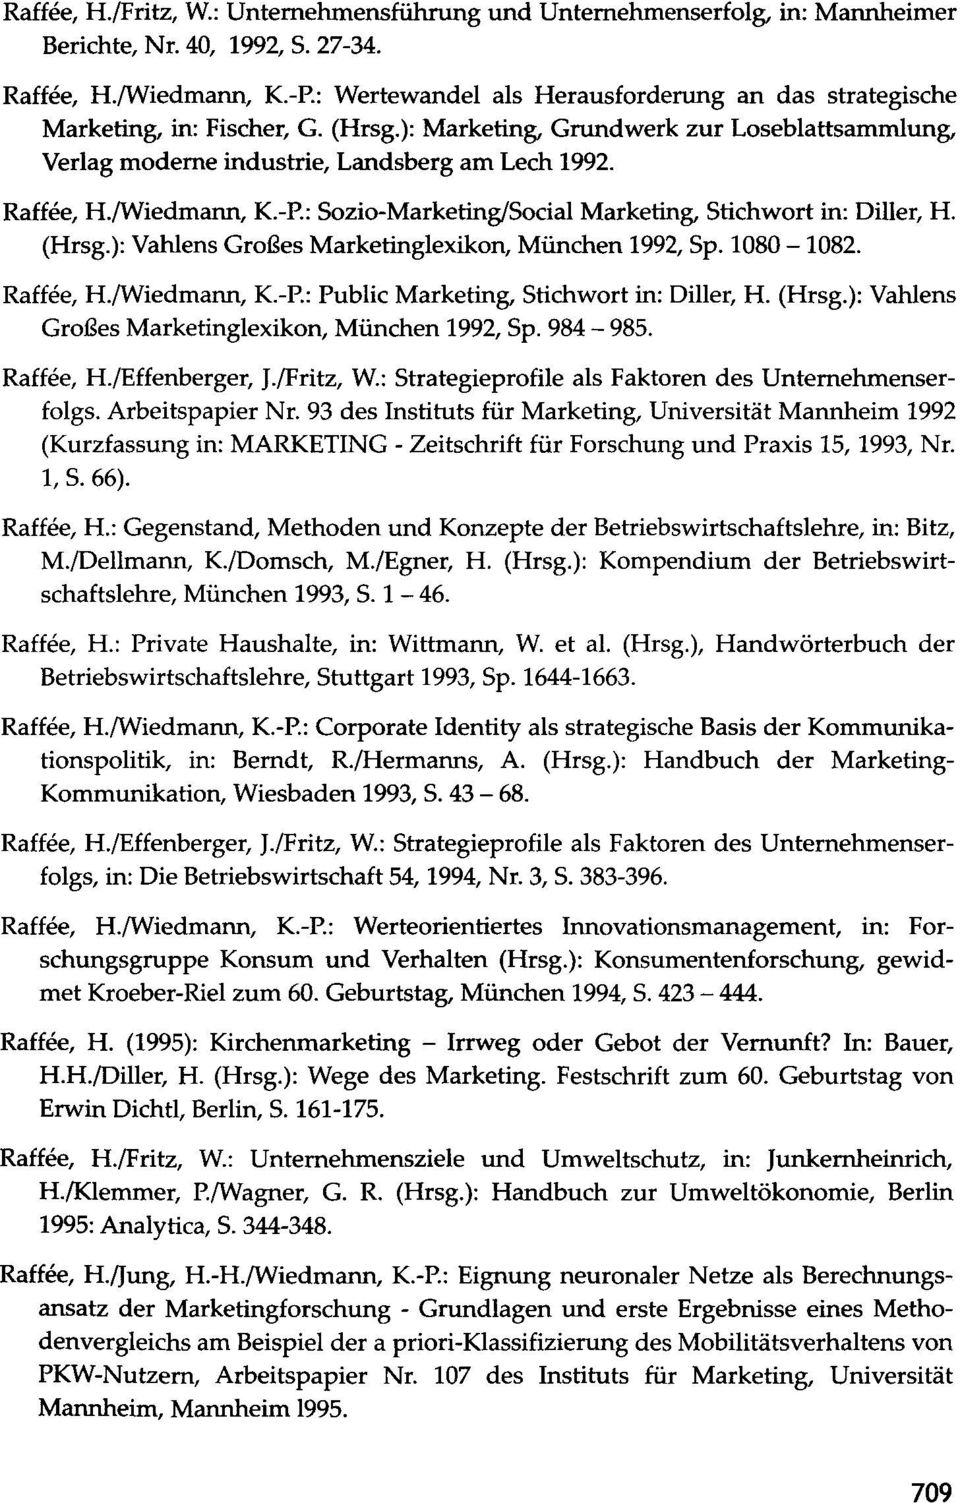 /Wiedmann, K-P.: Sozio-MarketinglSocial Marketing, Stichwort in: Diller, H. (Hrsg.): Vahlens Großes Marketinglexikon, München 1992, Sp. 1080-1082. Raffee, H./Wiedmann, K-P.: Public Marketing, Stichwort in: Diller, H.